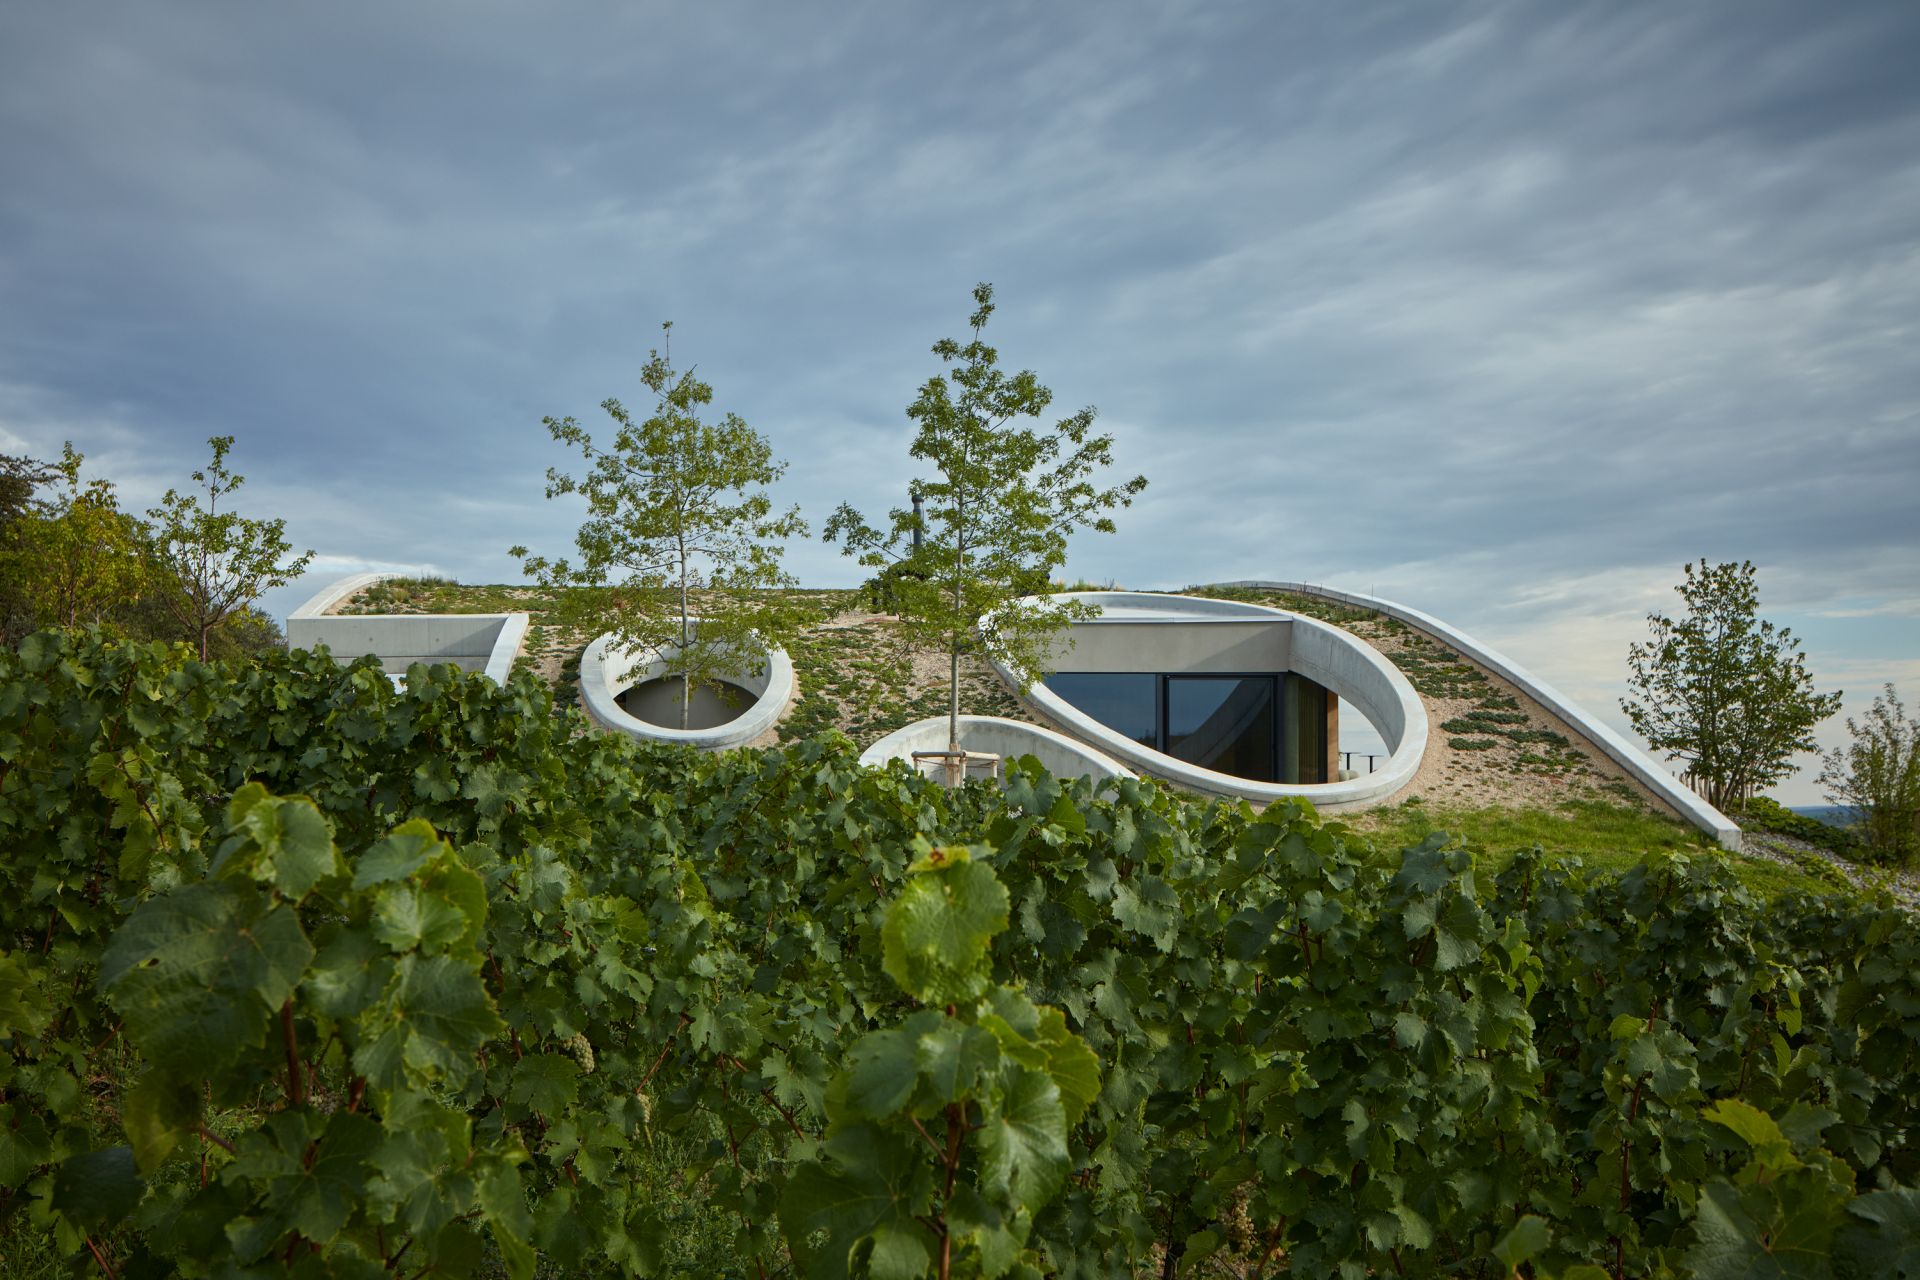 Udržateľné postupy vo vinárstve charakterizujú nielen techniku spracovania vína, ale aj prístup k stavbe.